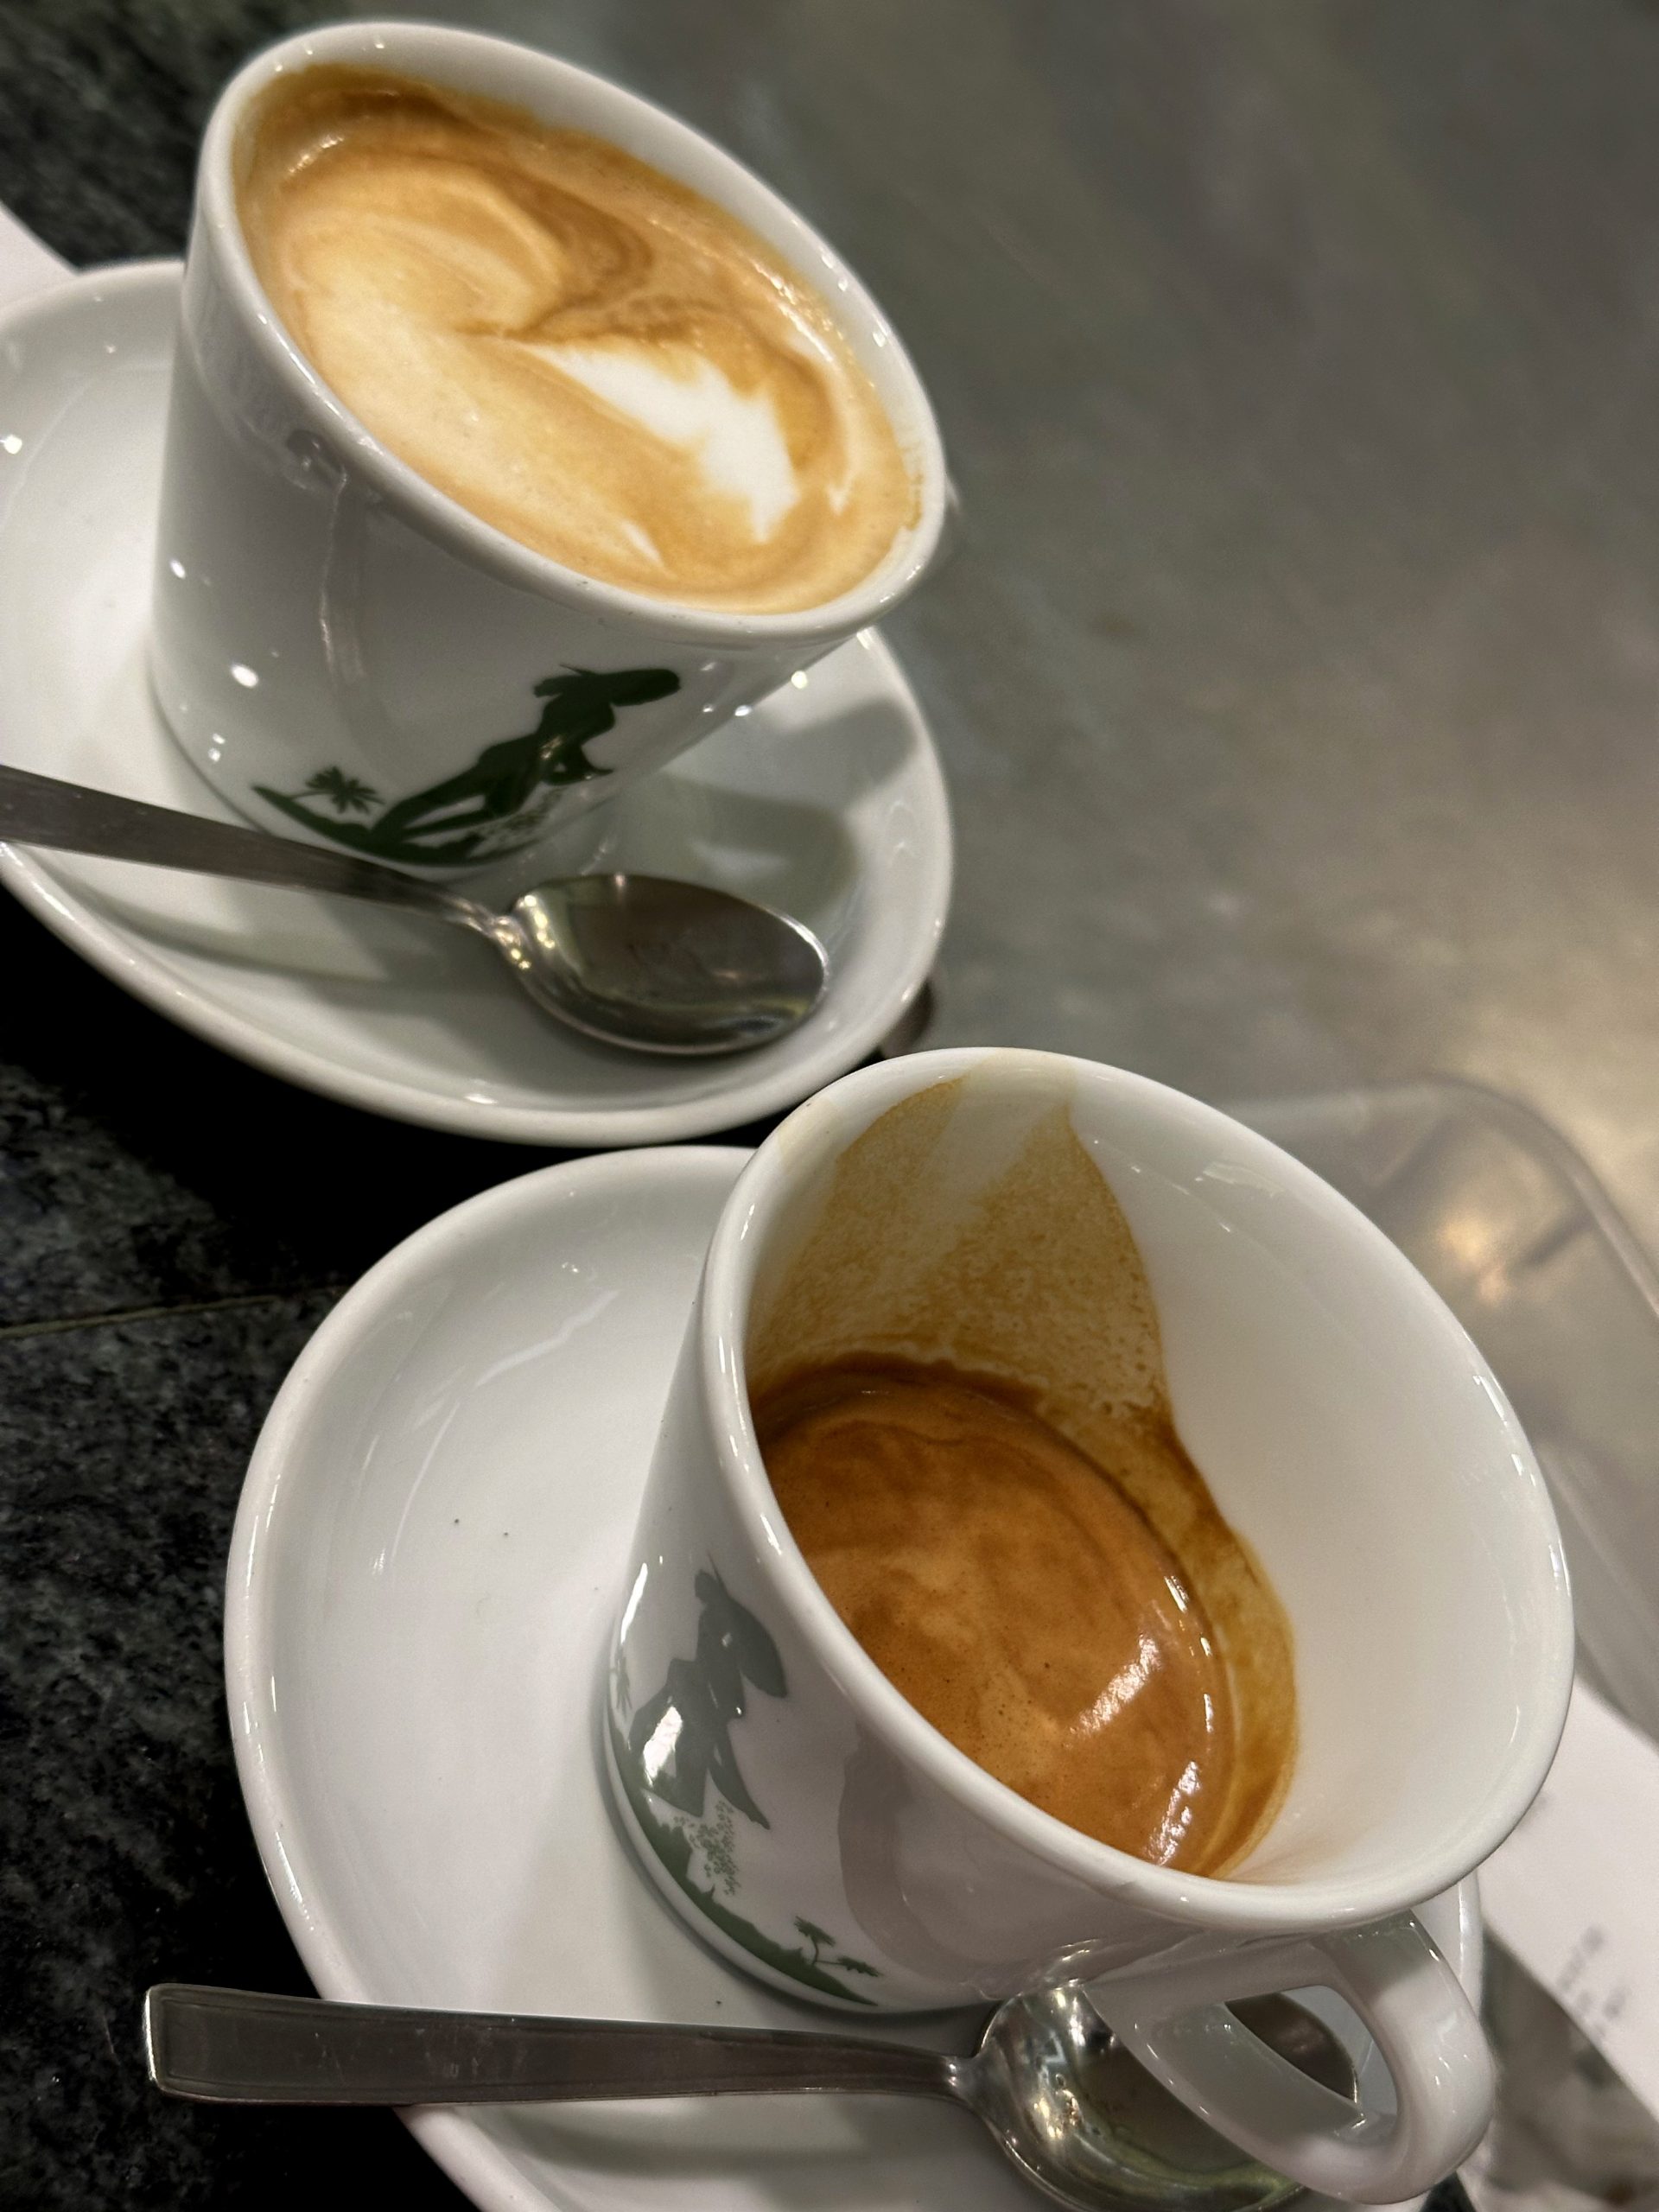 卡布奇諾 濃縮咖啡 咖啡館 咖啡因 拿鐵 瑪奇朵 美式咖啡 cappuccino espresso cafe caffeine latte macchiato americano